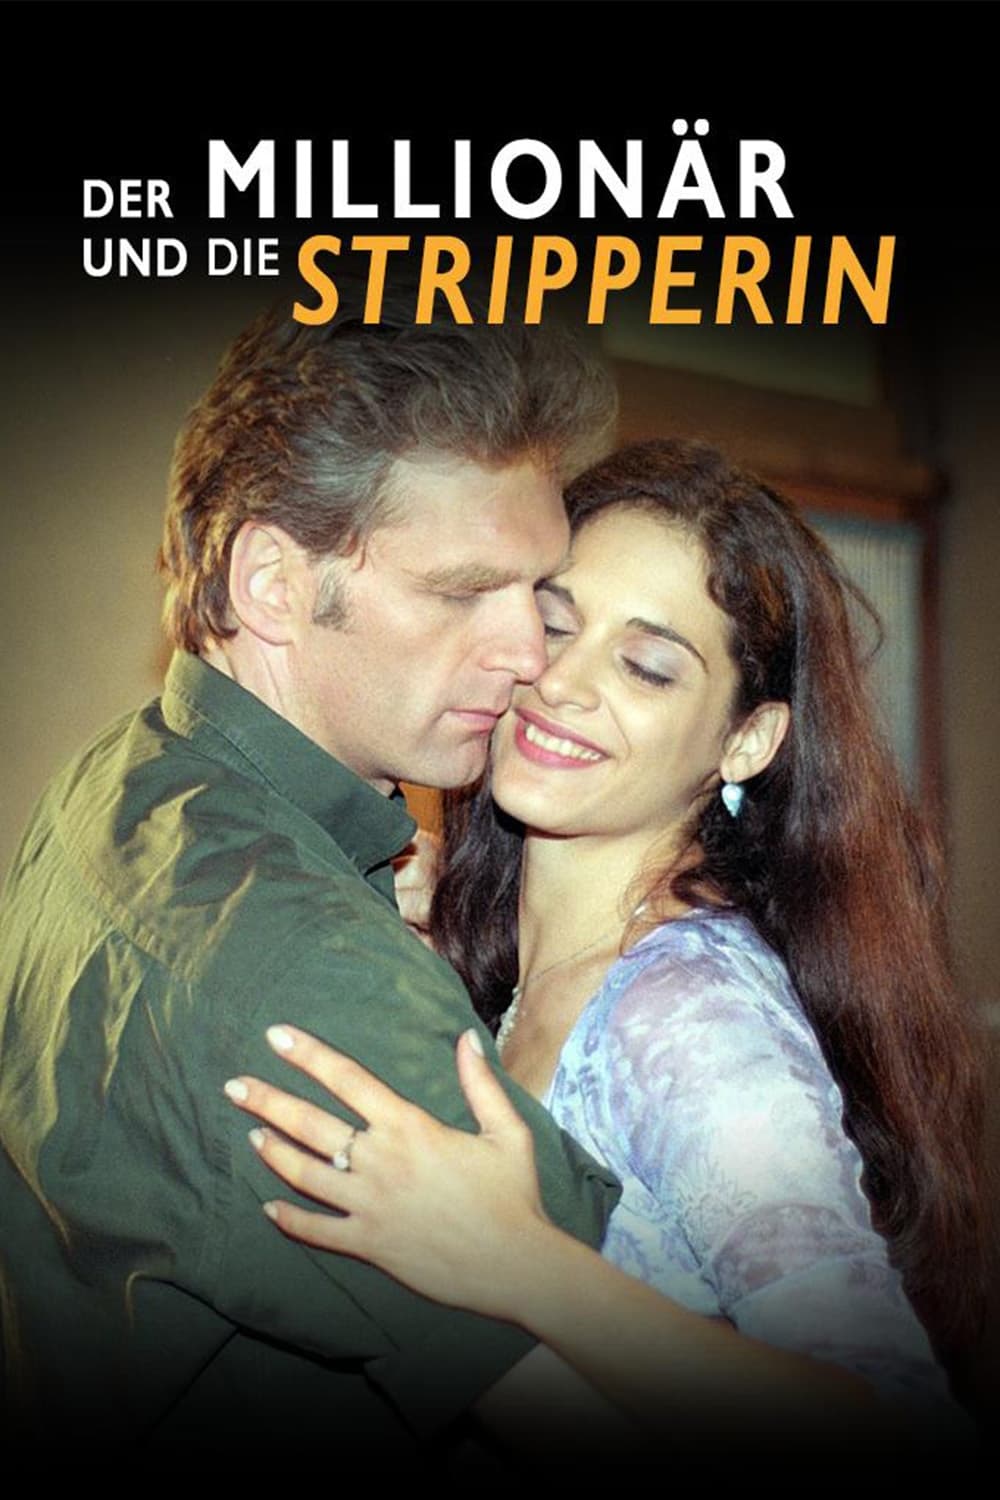 Der Millionär und die Stripperin (2001)